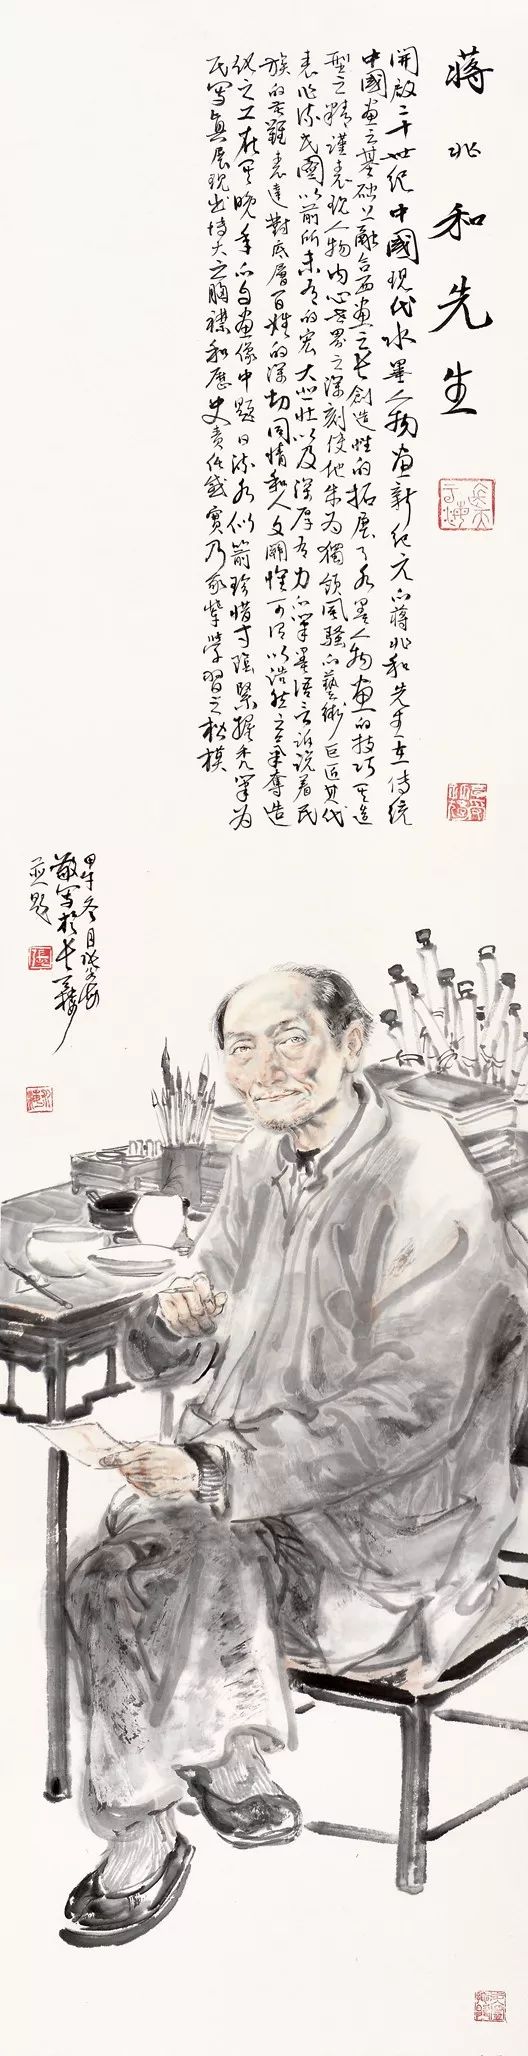 单纯·朴素·生动——著名画家张永海用真实的笔墨表现生活